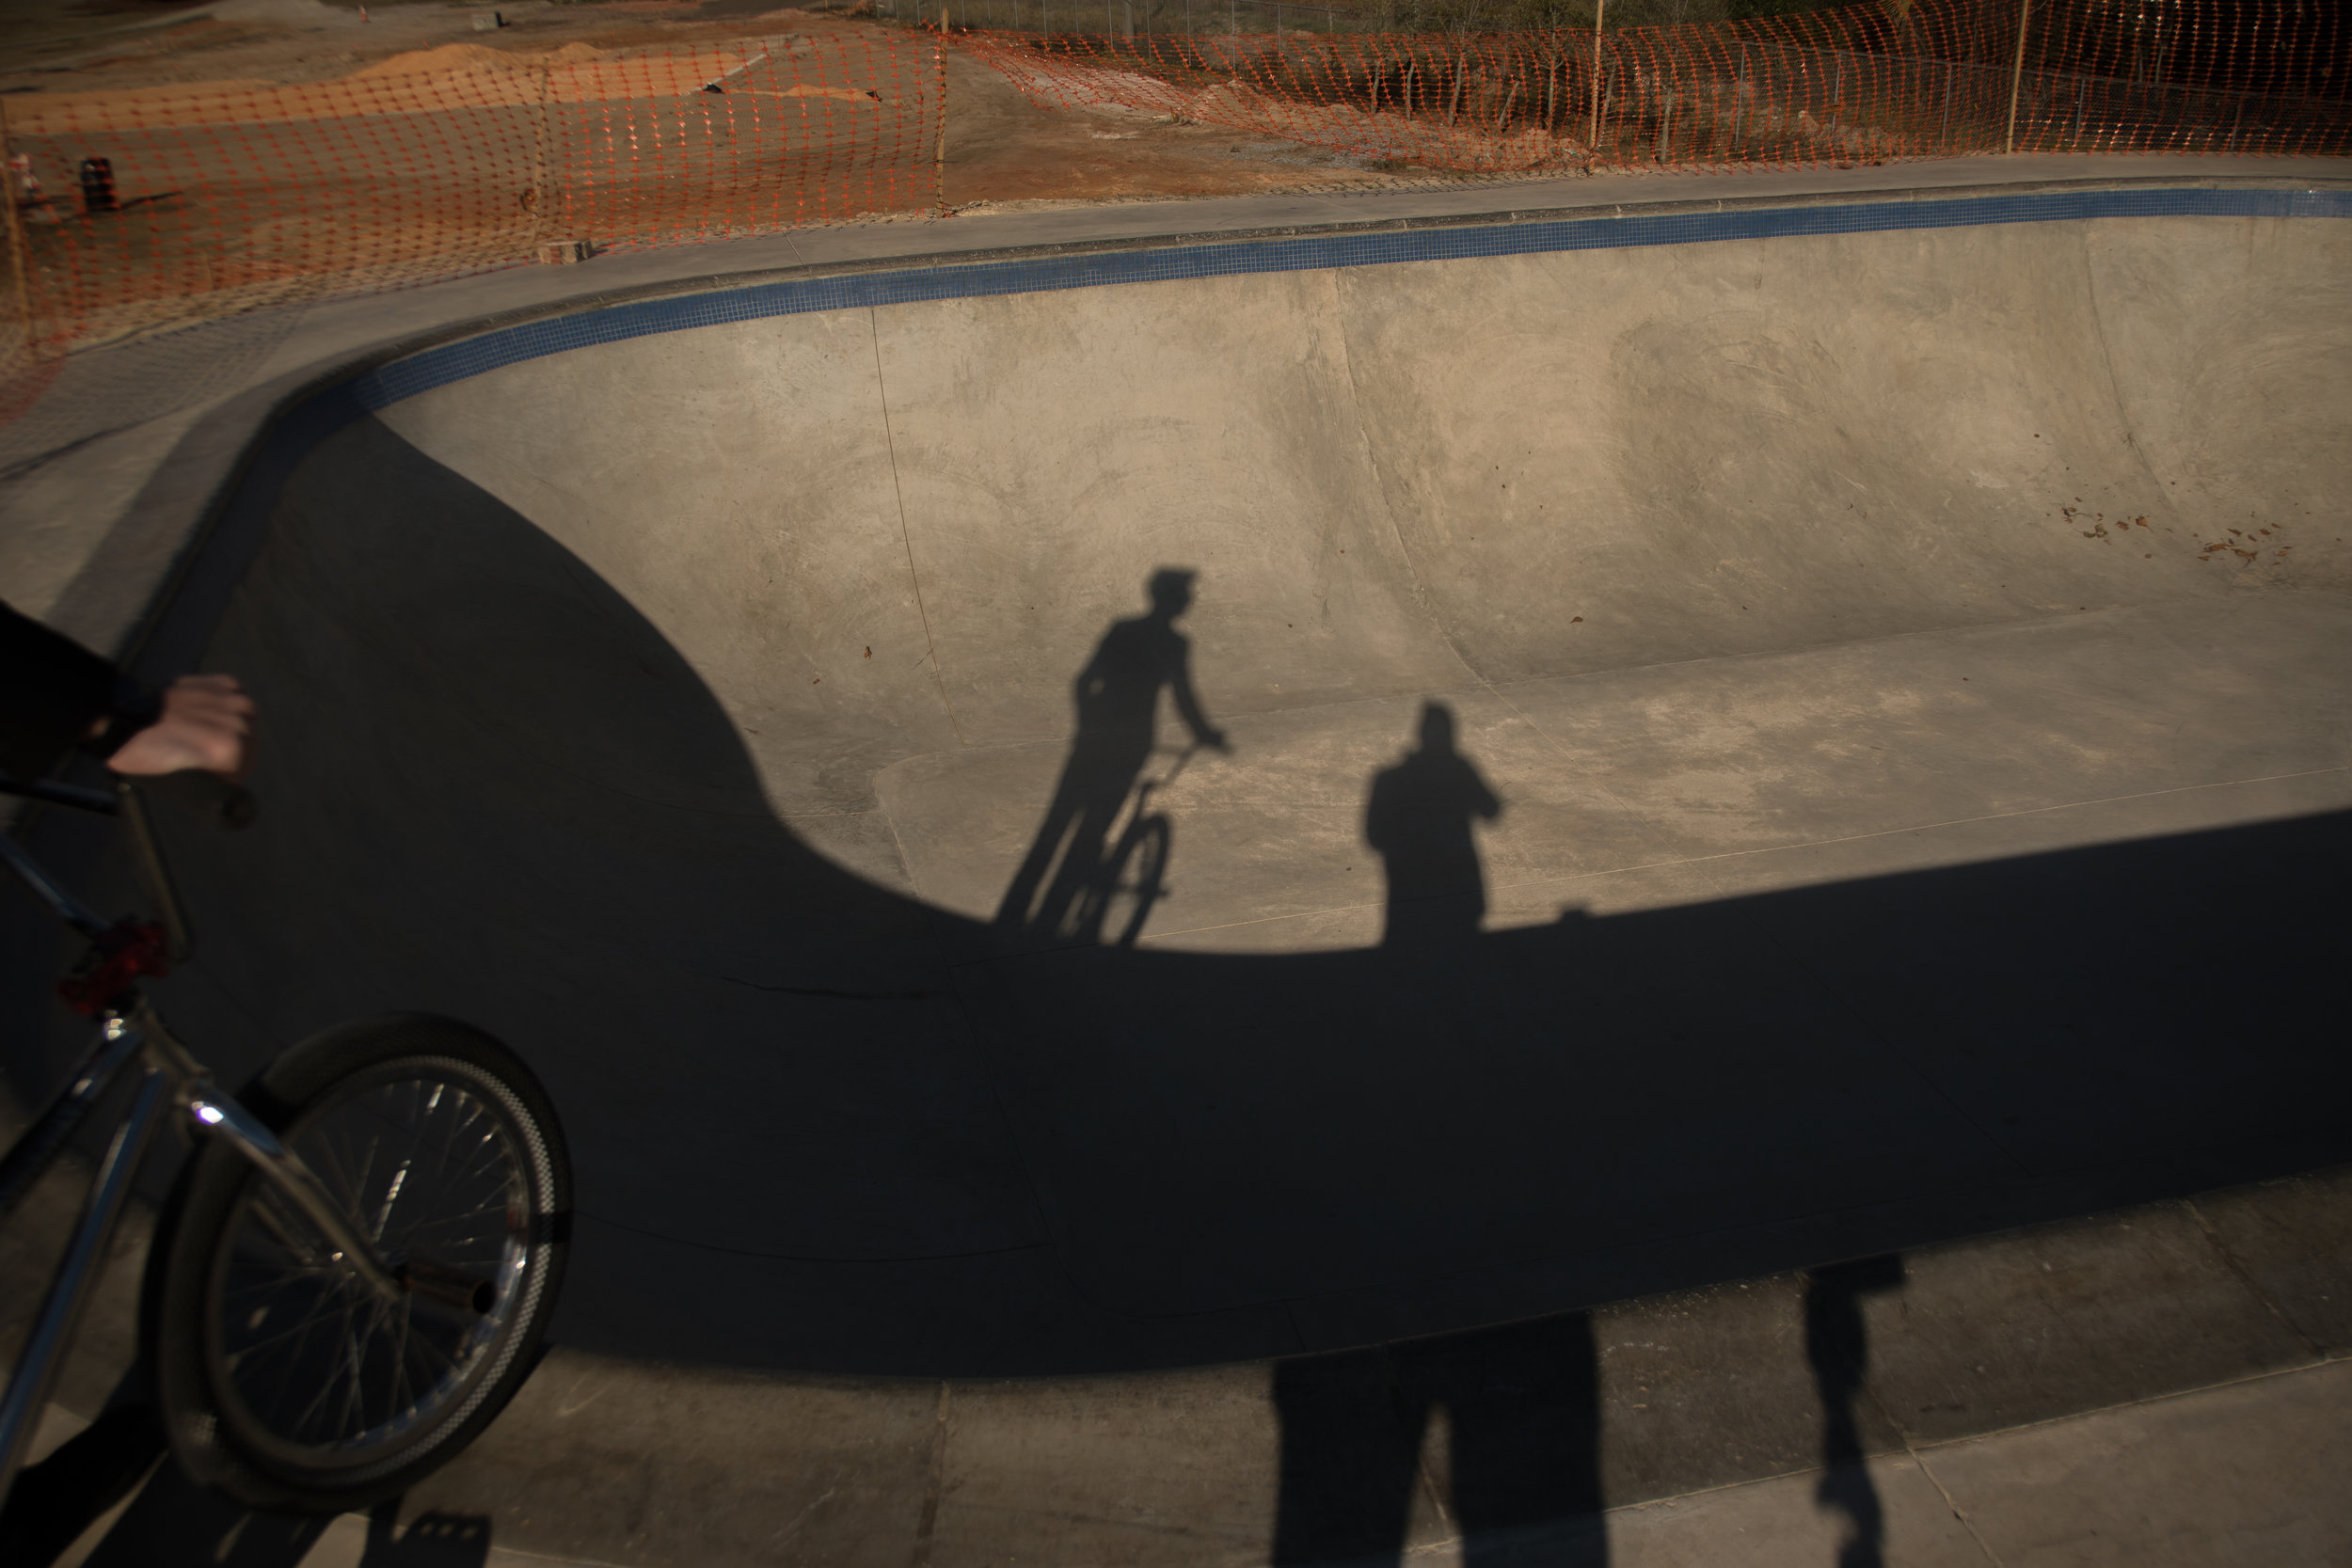 Zack_skateboards-3259.jpg